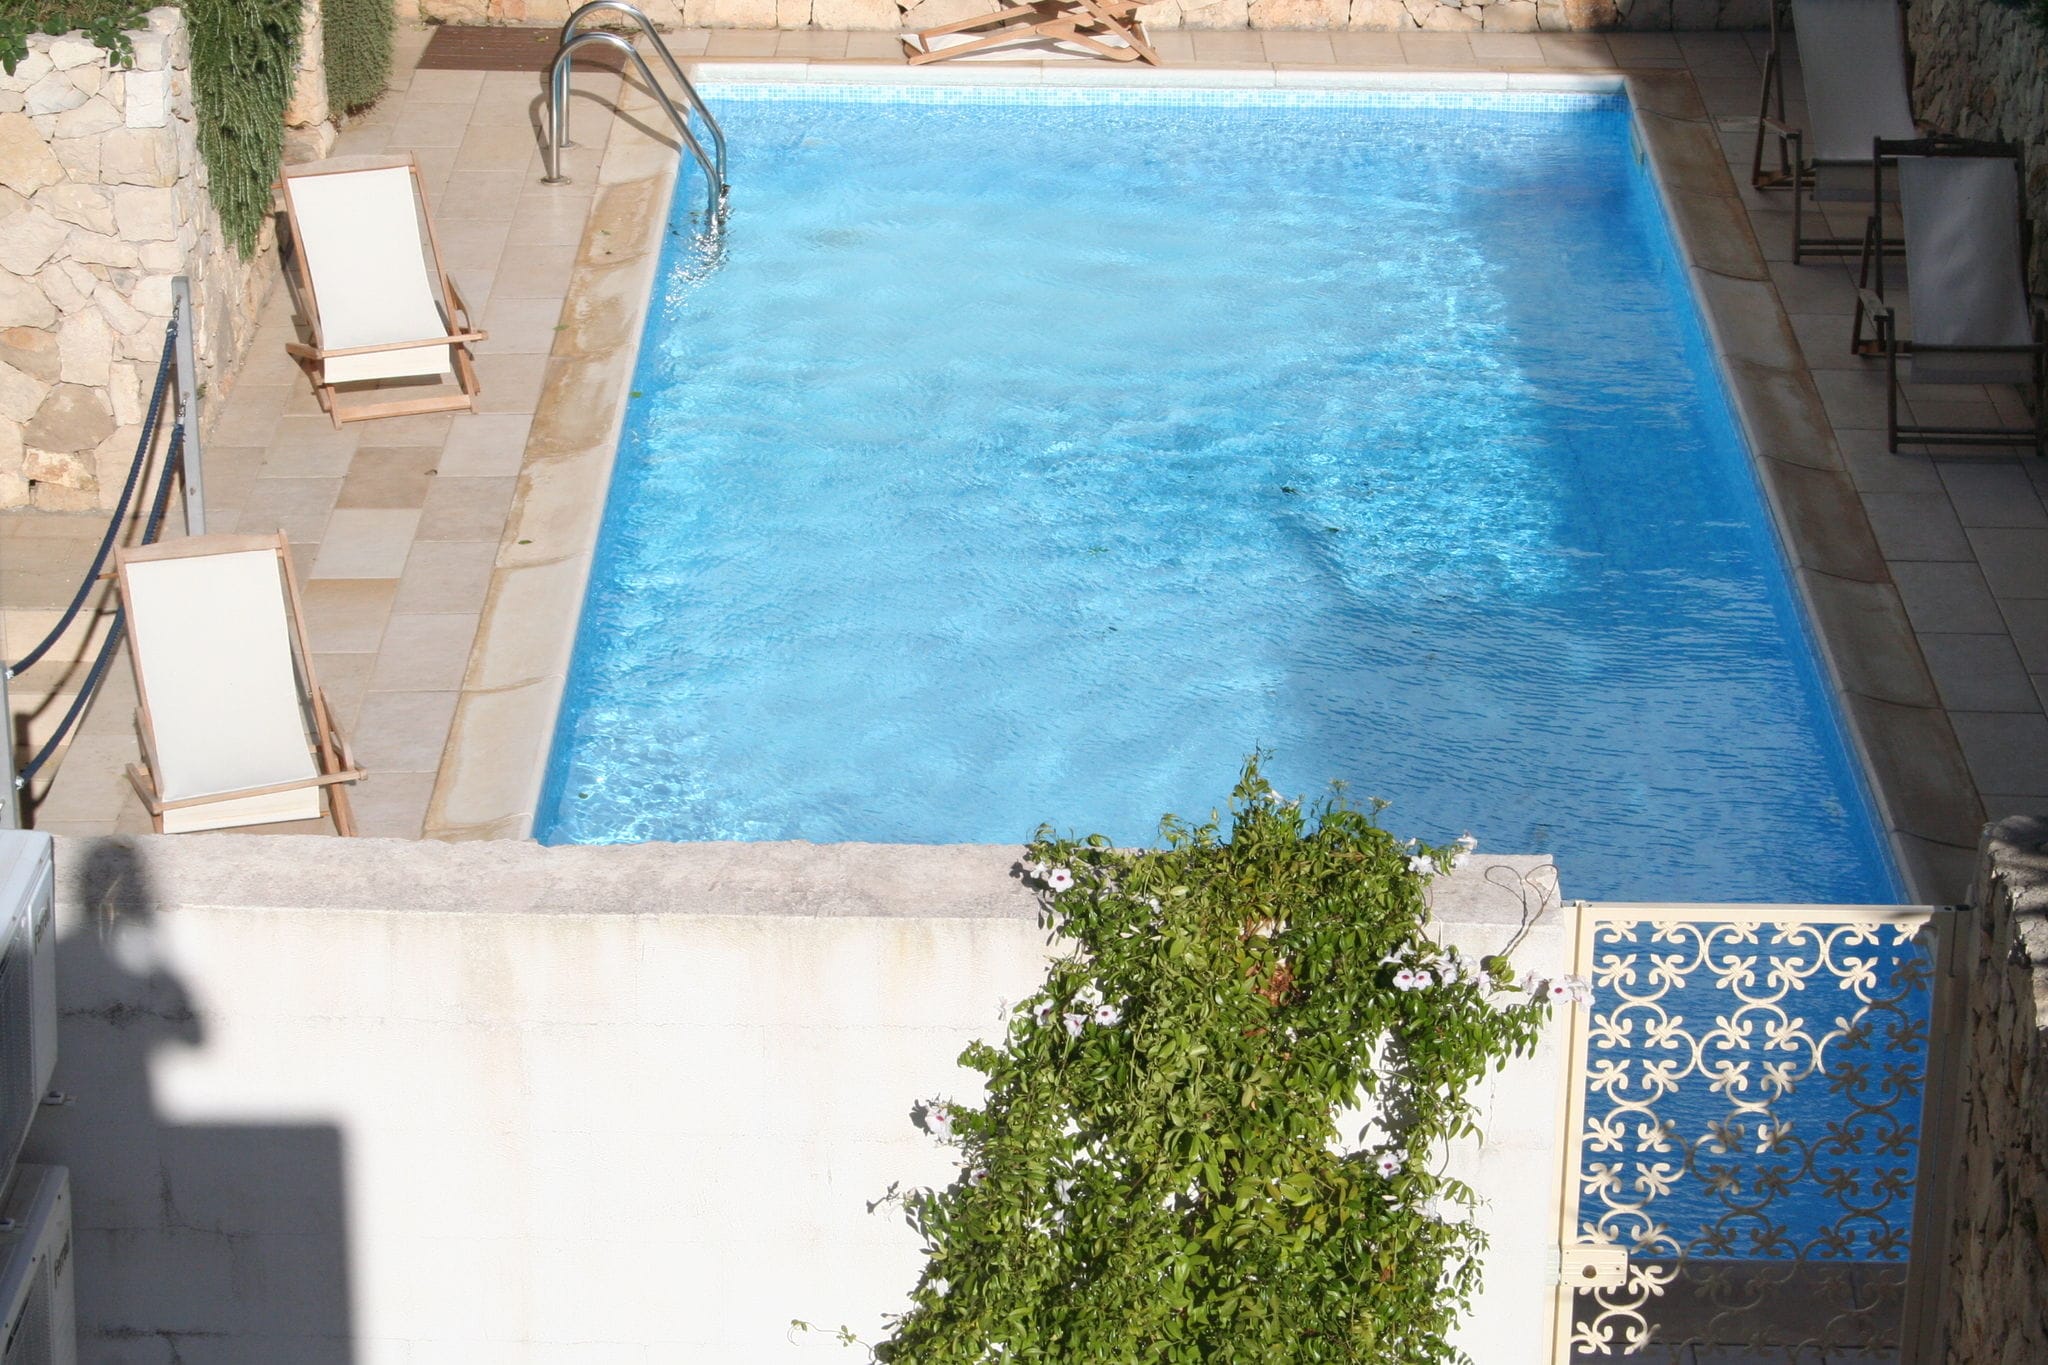 Modern appartement in Nardò met zwembad